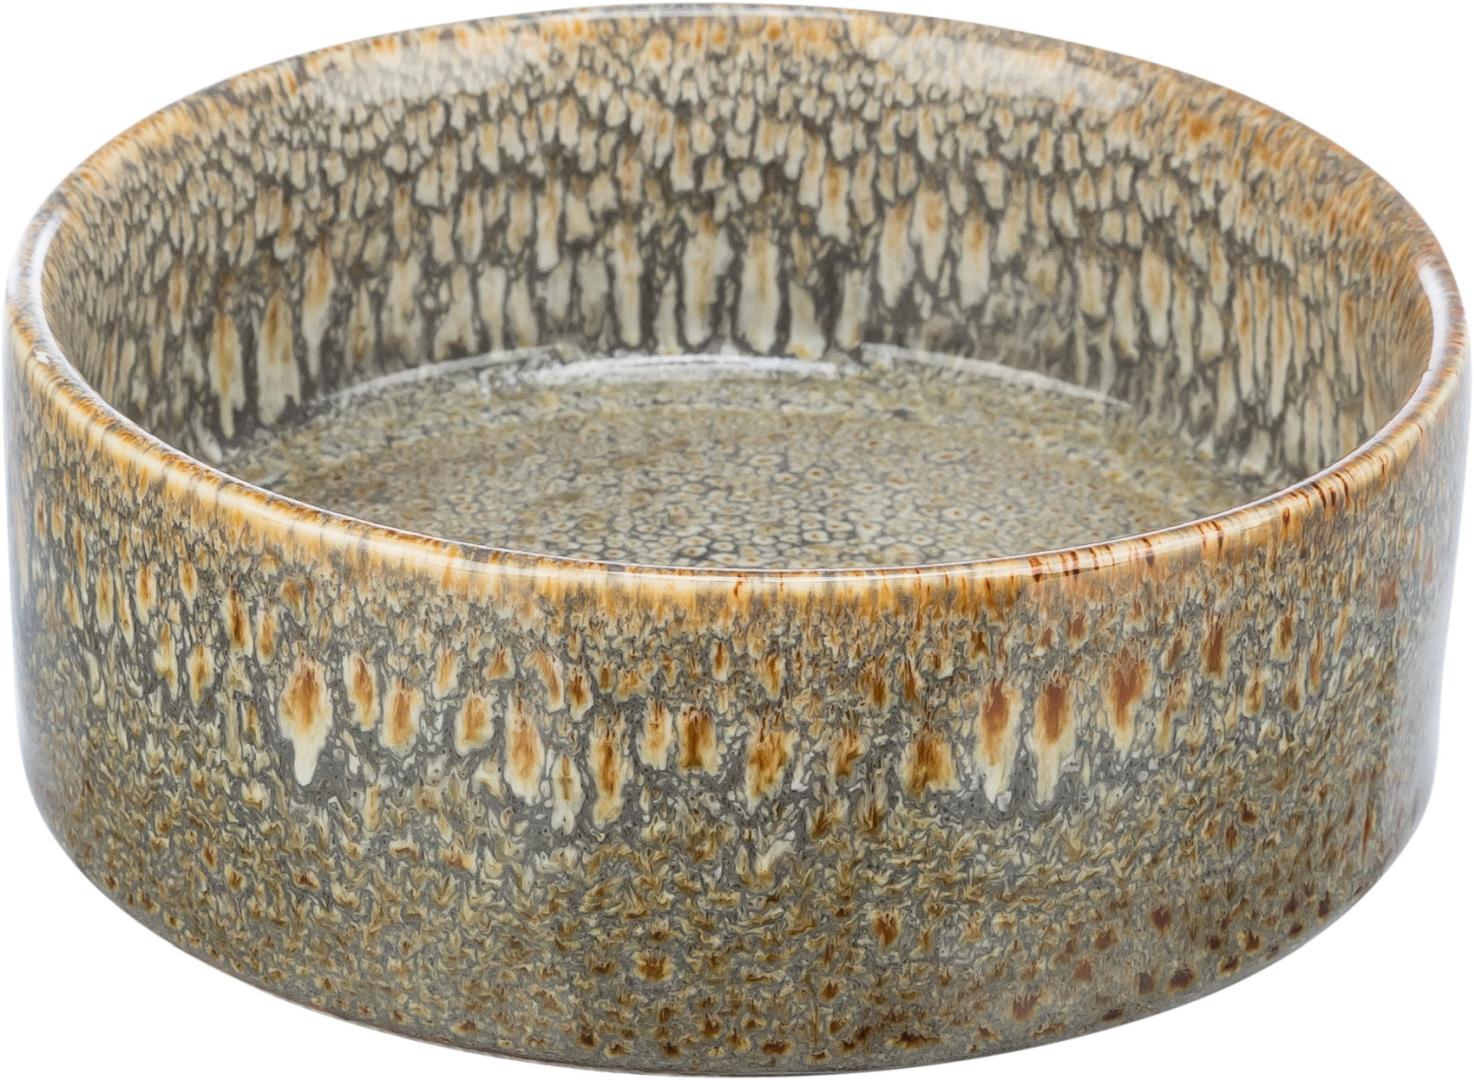 TRIXIE Napf, Keramik, 0,4 l / Ø 13 cm, braun